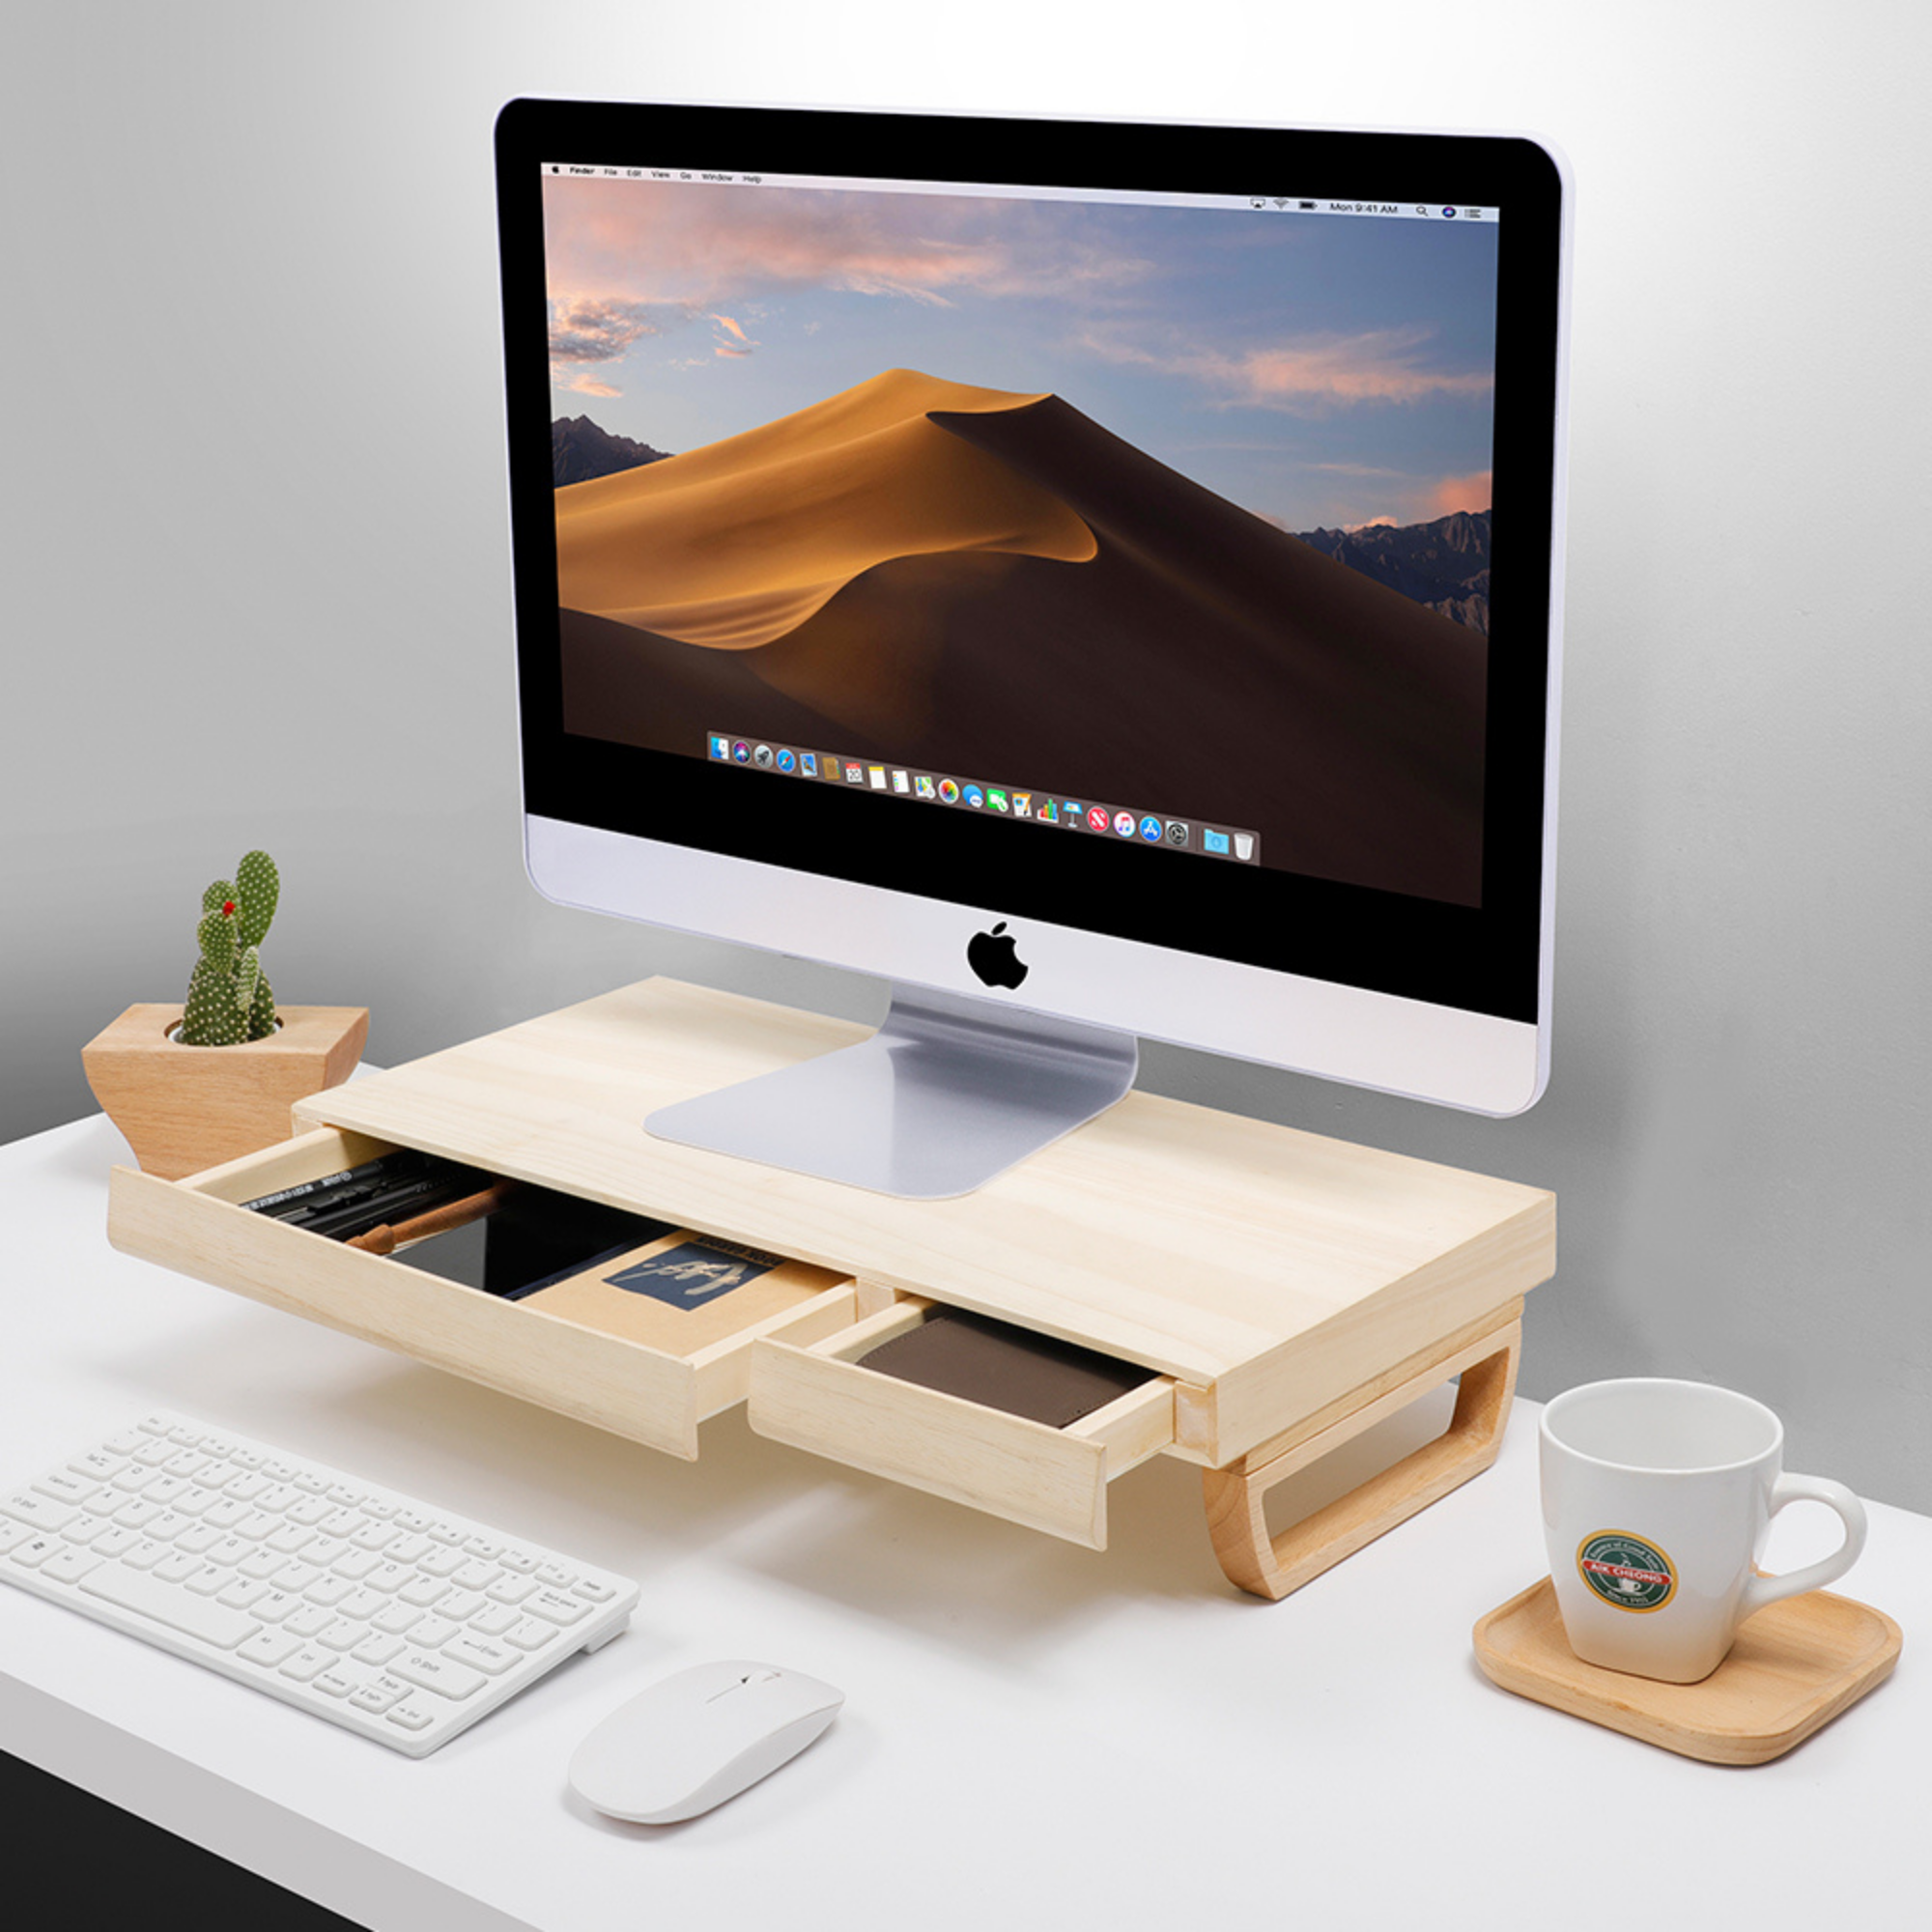 Support écran avec tiroir - Pour votre ordinateur de bureau